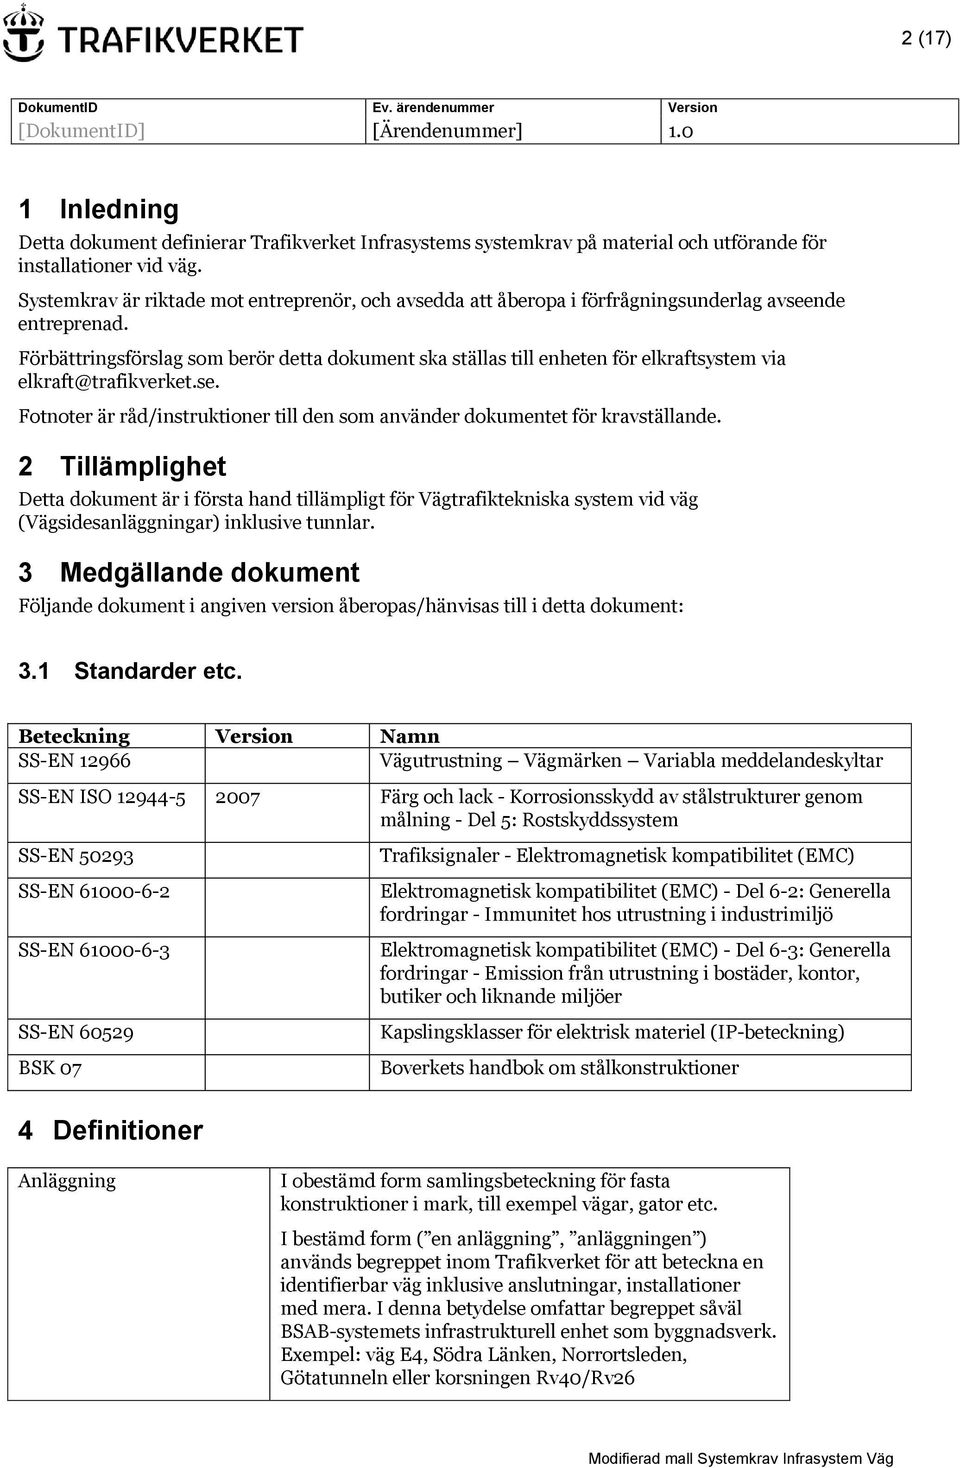 Förbättringsförslag som berör detta dokument ska ställas till enheten för elkraftsystem via elkraft@trafikverket.se. Fotnoter är råd/instruktioner till den som använder dokumentet för kravställande.